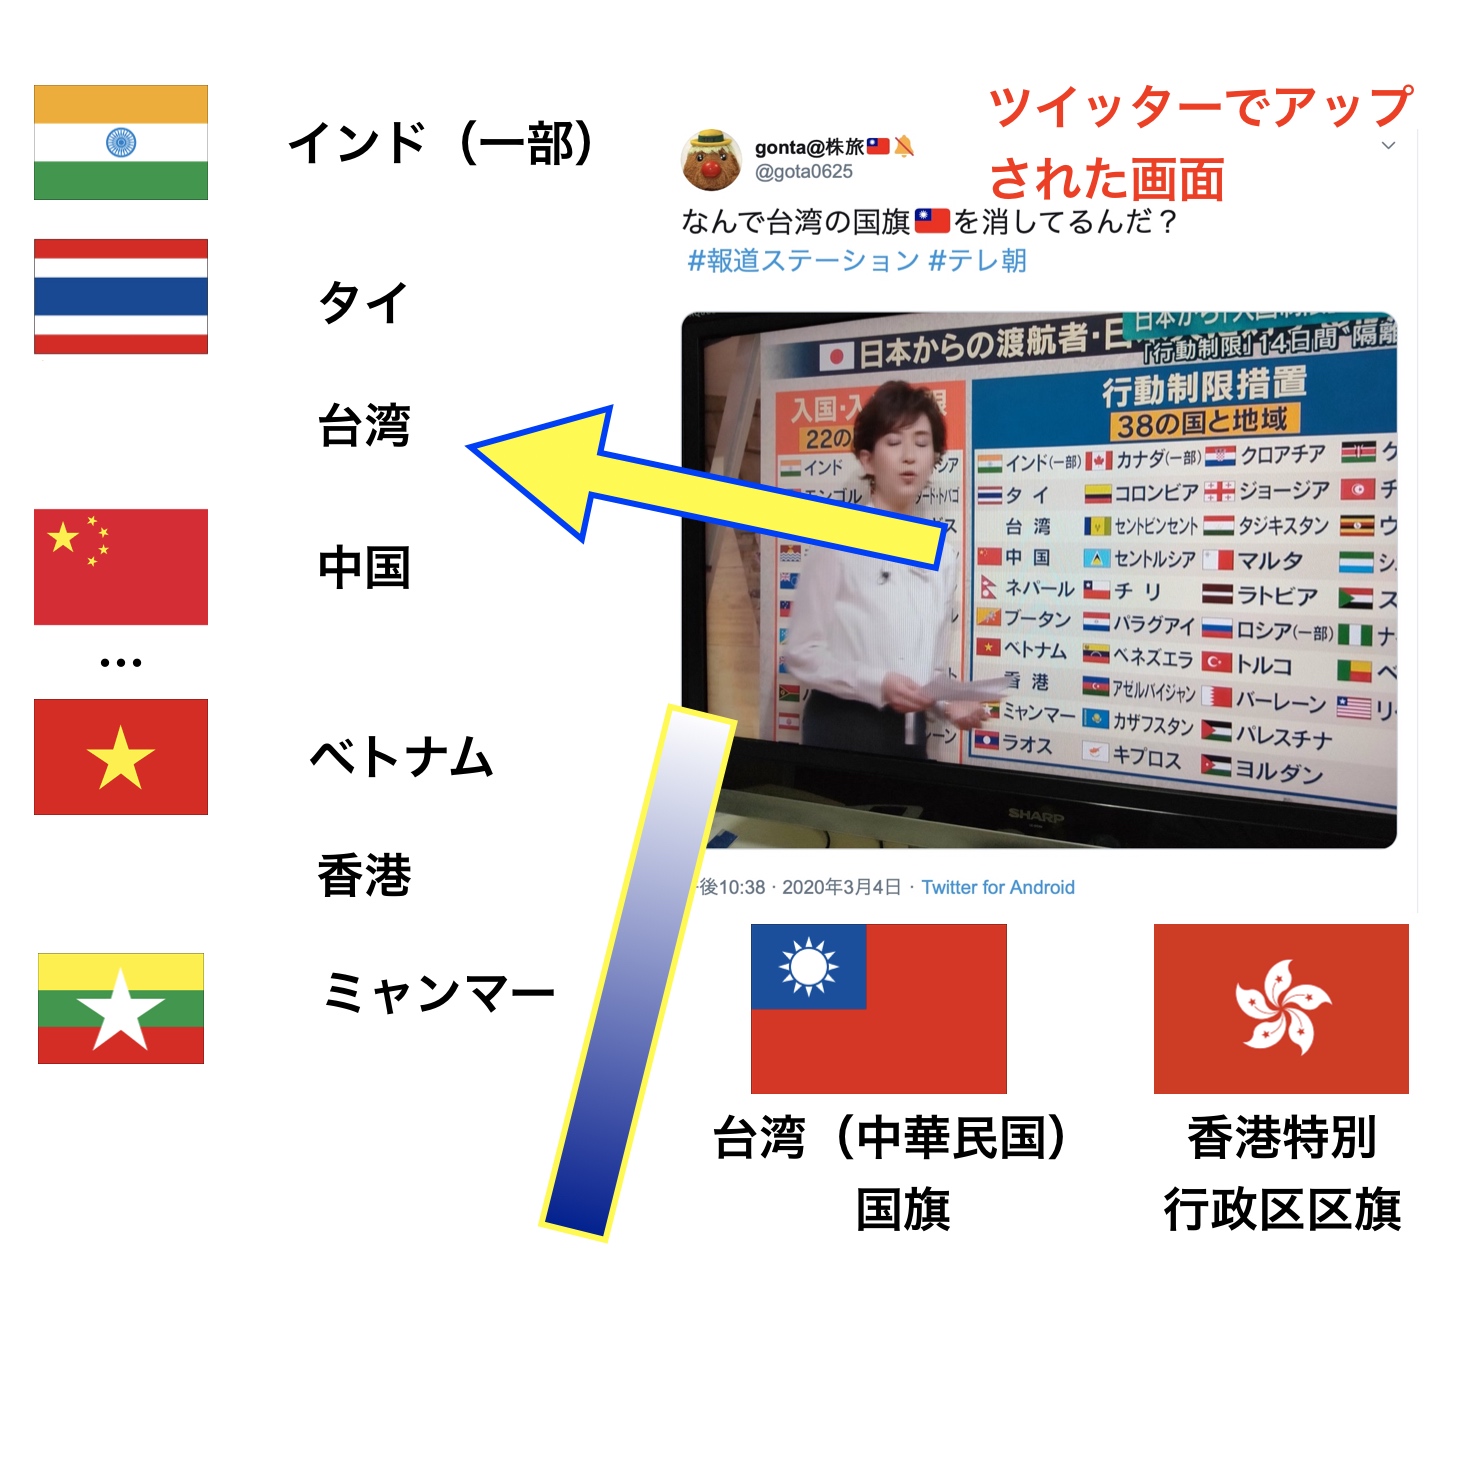 報ステが台湾の国旗消した 中国に忖度 令和電子瓦版